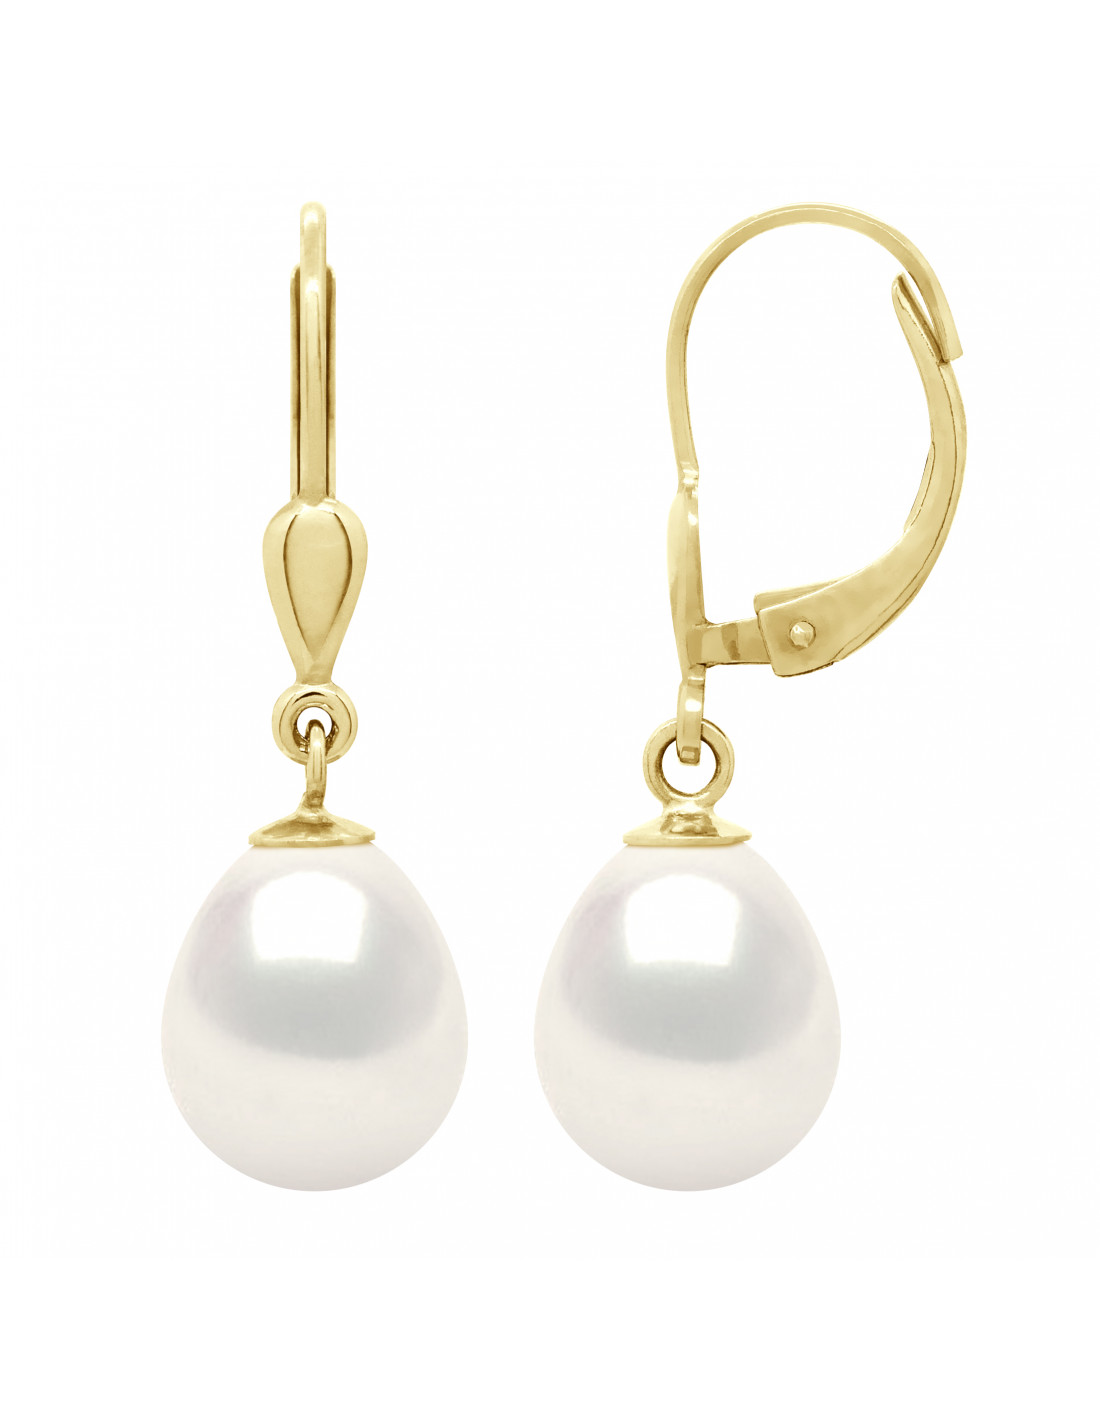 Véritable Perle d'eau douce Paire de 3 perles noires diamètre différents  Création de boucle d'oreille Pendentif - Perles et Apprêts - Eurasian Style